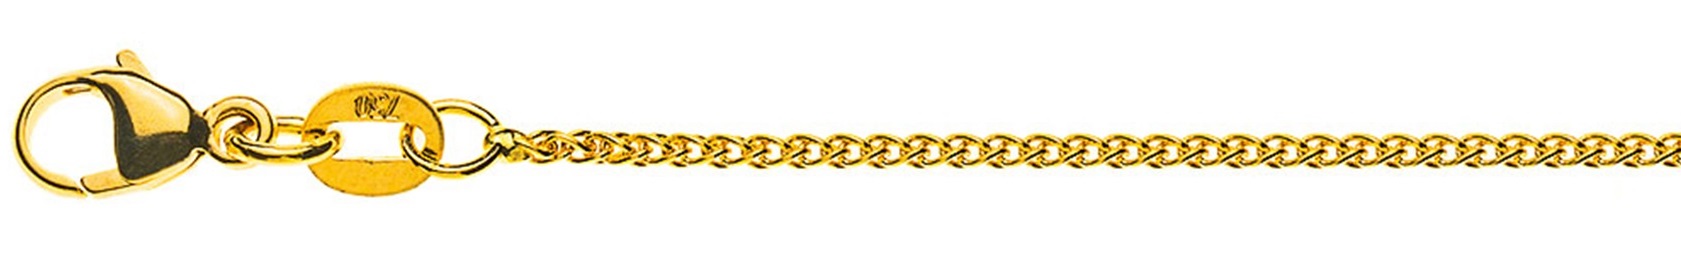 AURONOS Prestige Halskette Gelbgold 18K Zopfkette 60cm 1.2mm